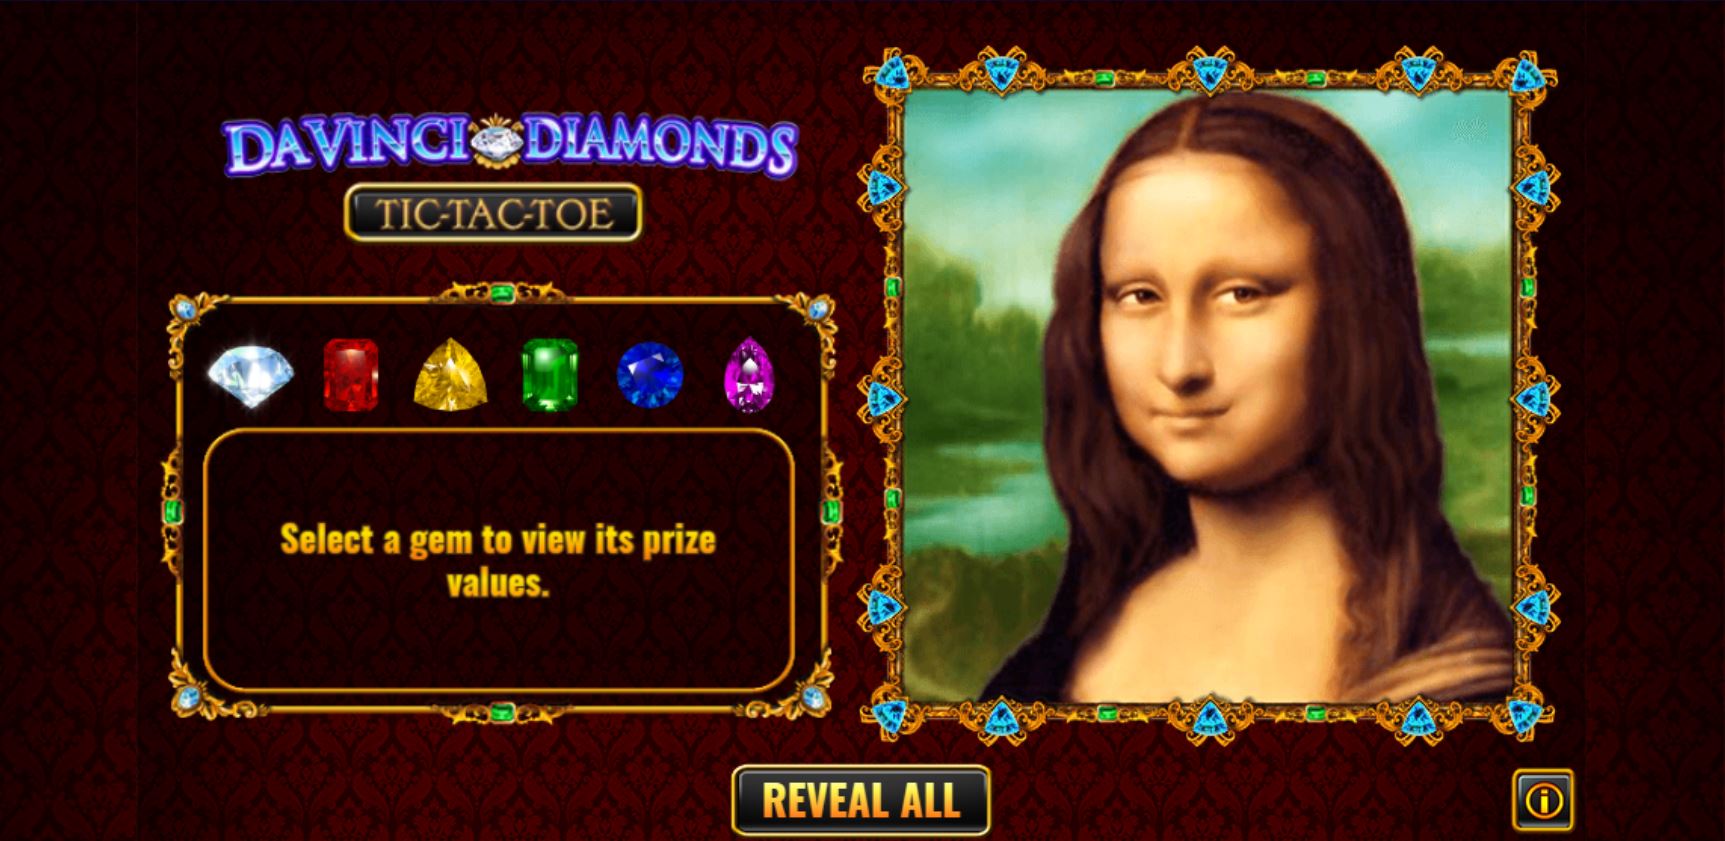 Da Vinci Diamonds Tic Tac Toe carousel image 1